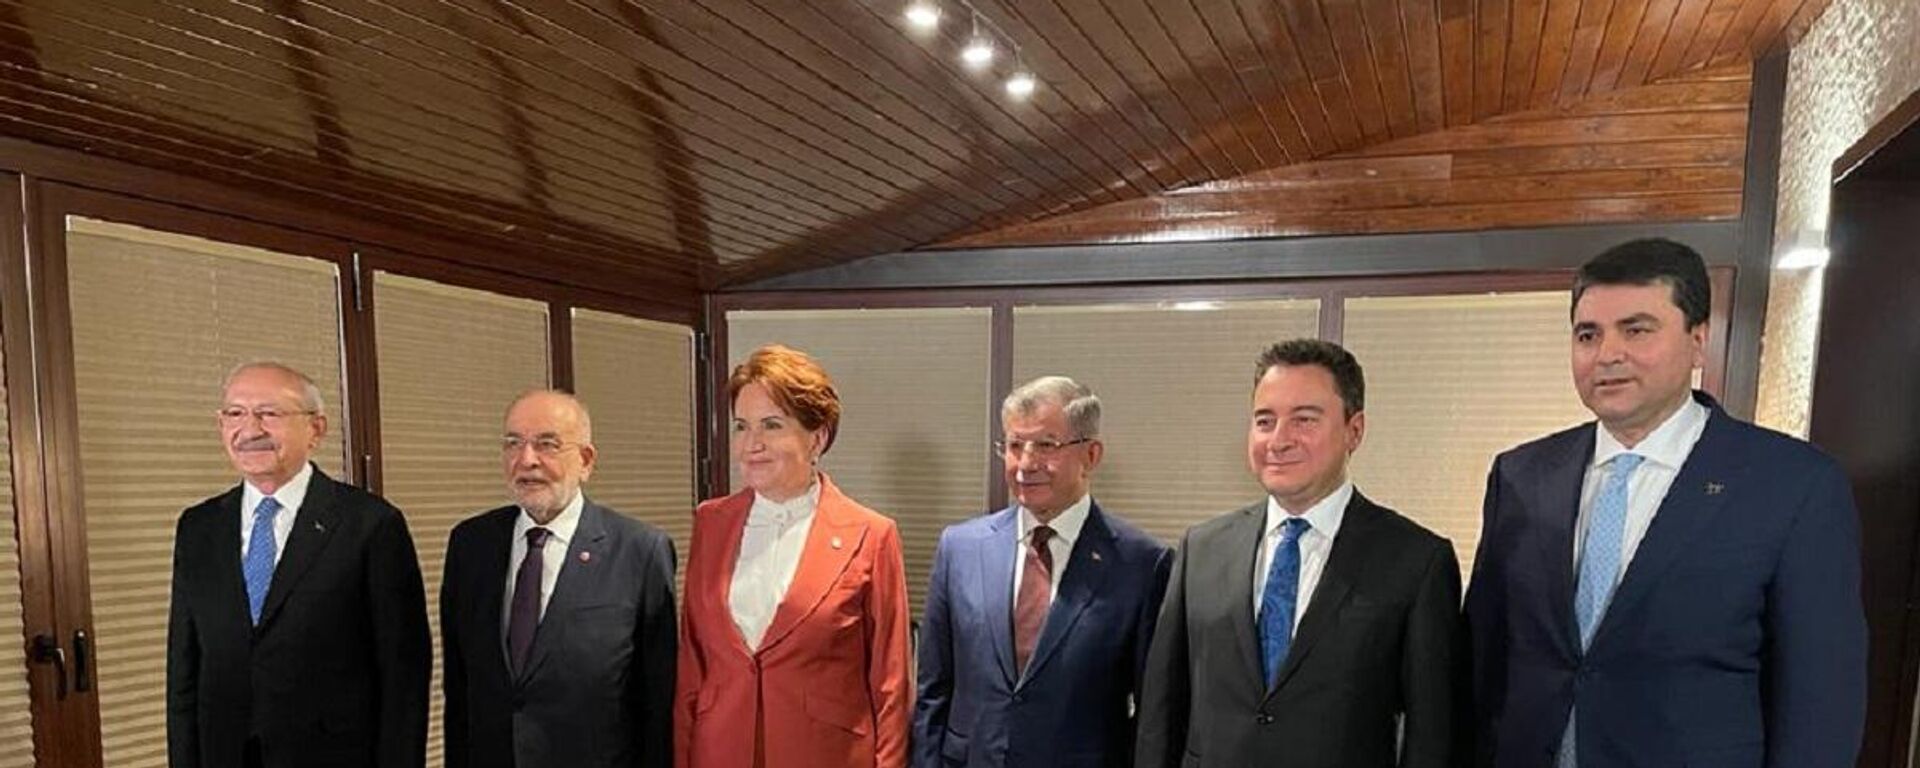 CHP Genel Başkanı Kemal Kılıçdaroğlu'nun daveti ile 6 parti lideri akşam yemeğinde bir araya geldi. - Sputnik Türkiye, 1920, 14.02.2022